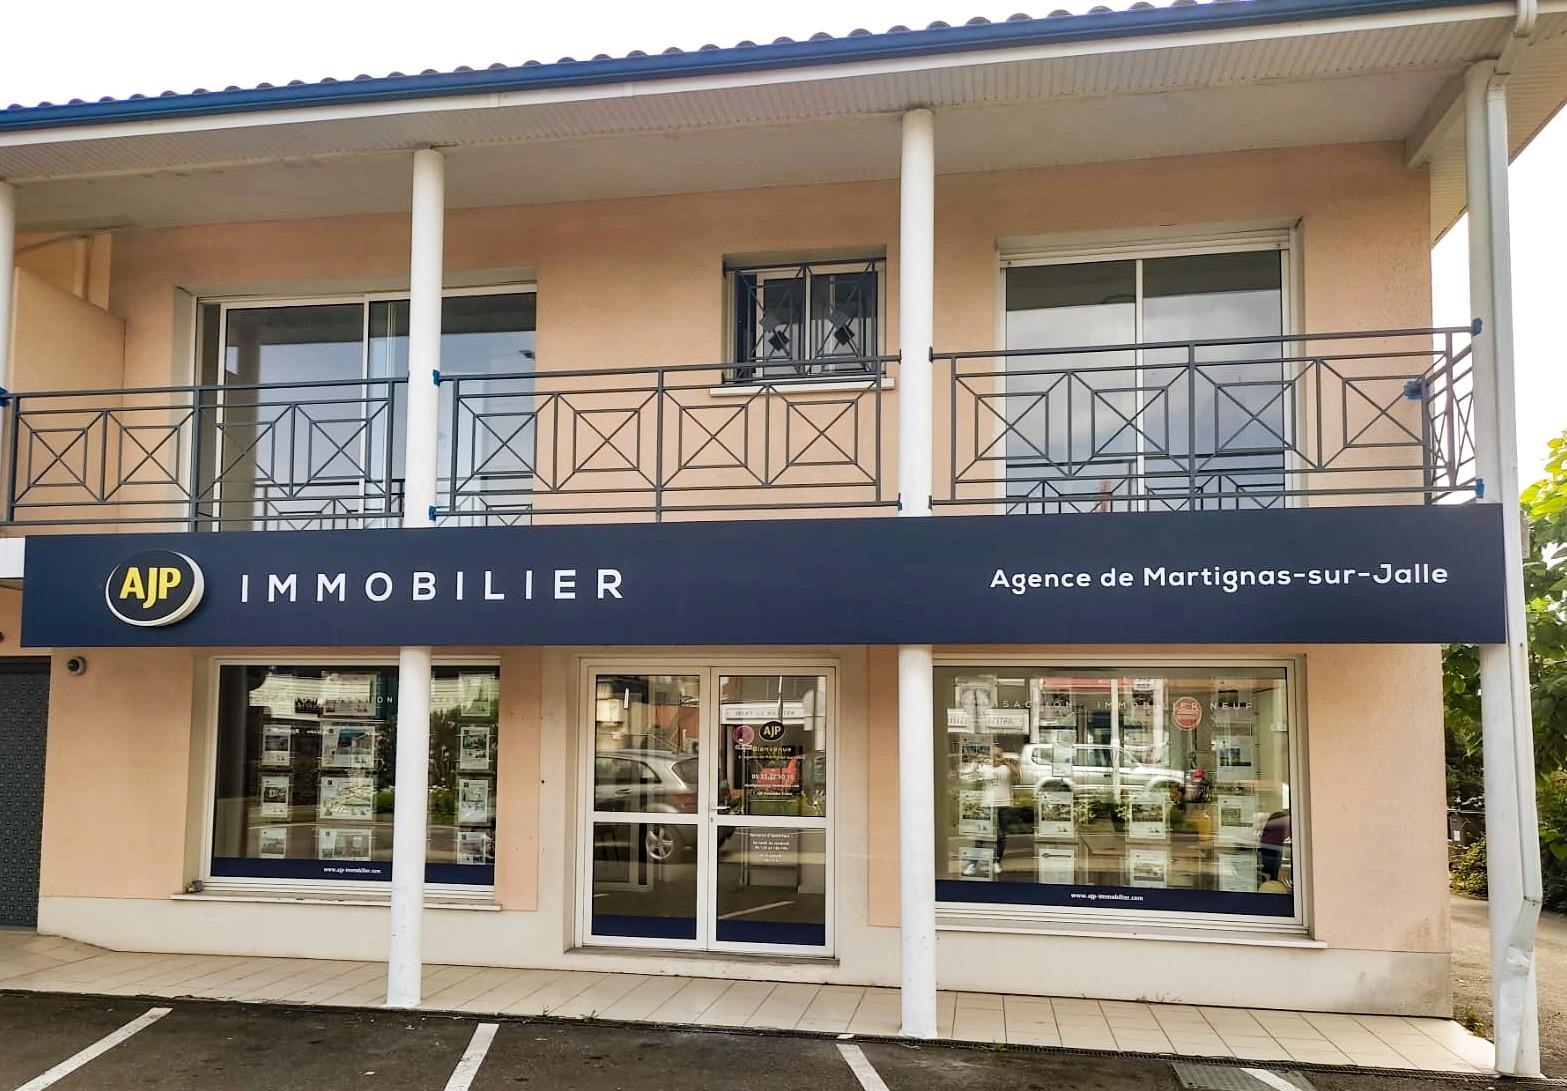 AJP Immobilier Martignas-sur-Jalle